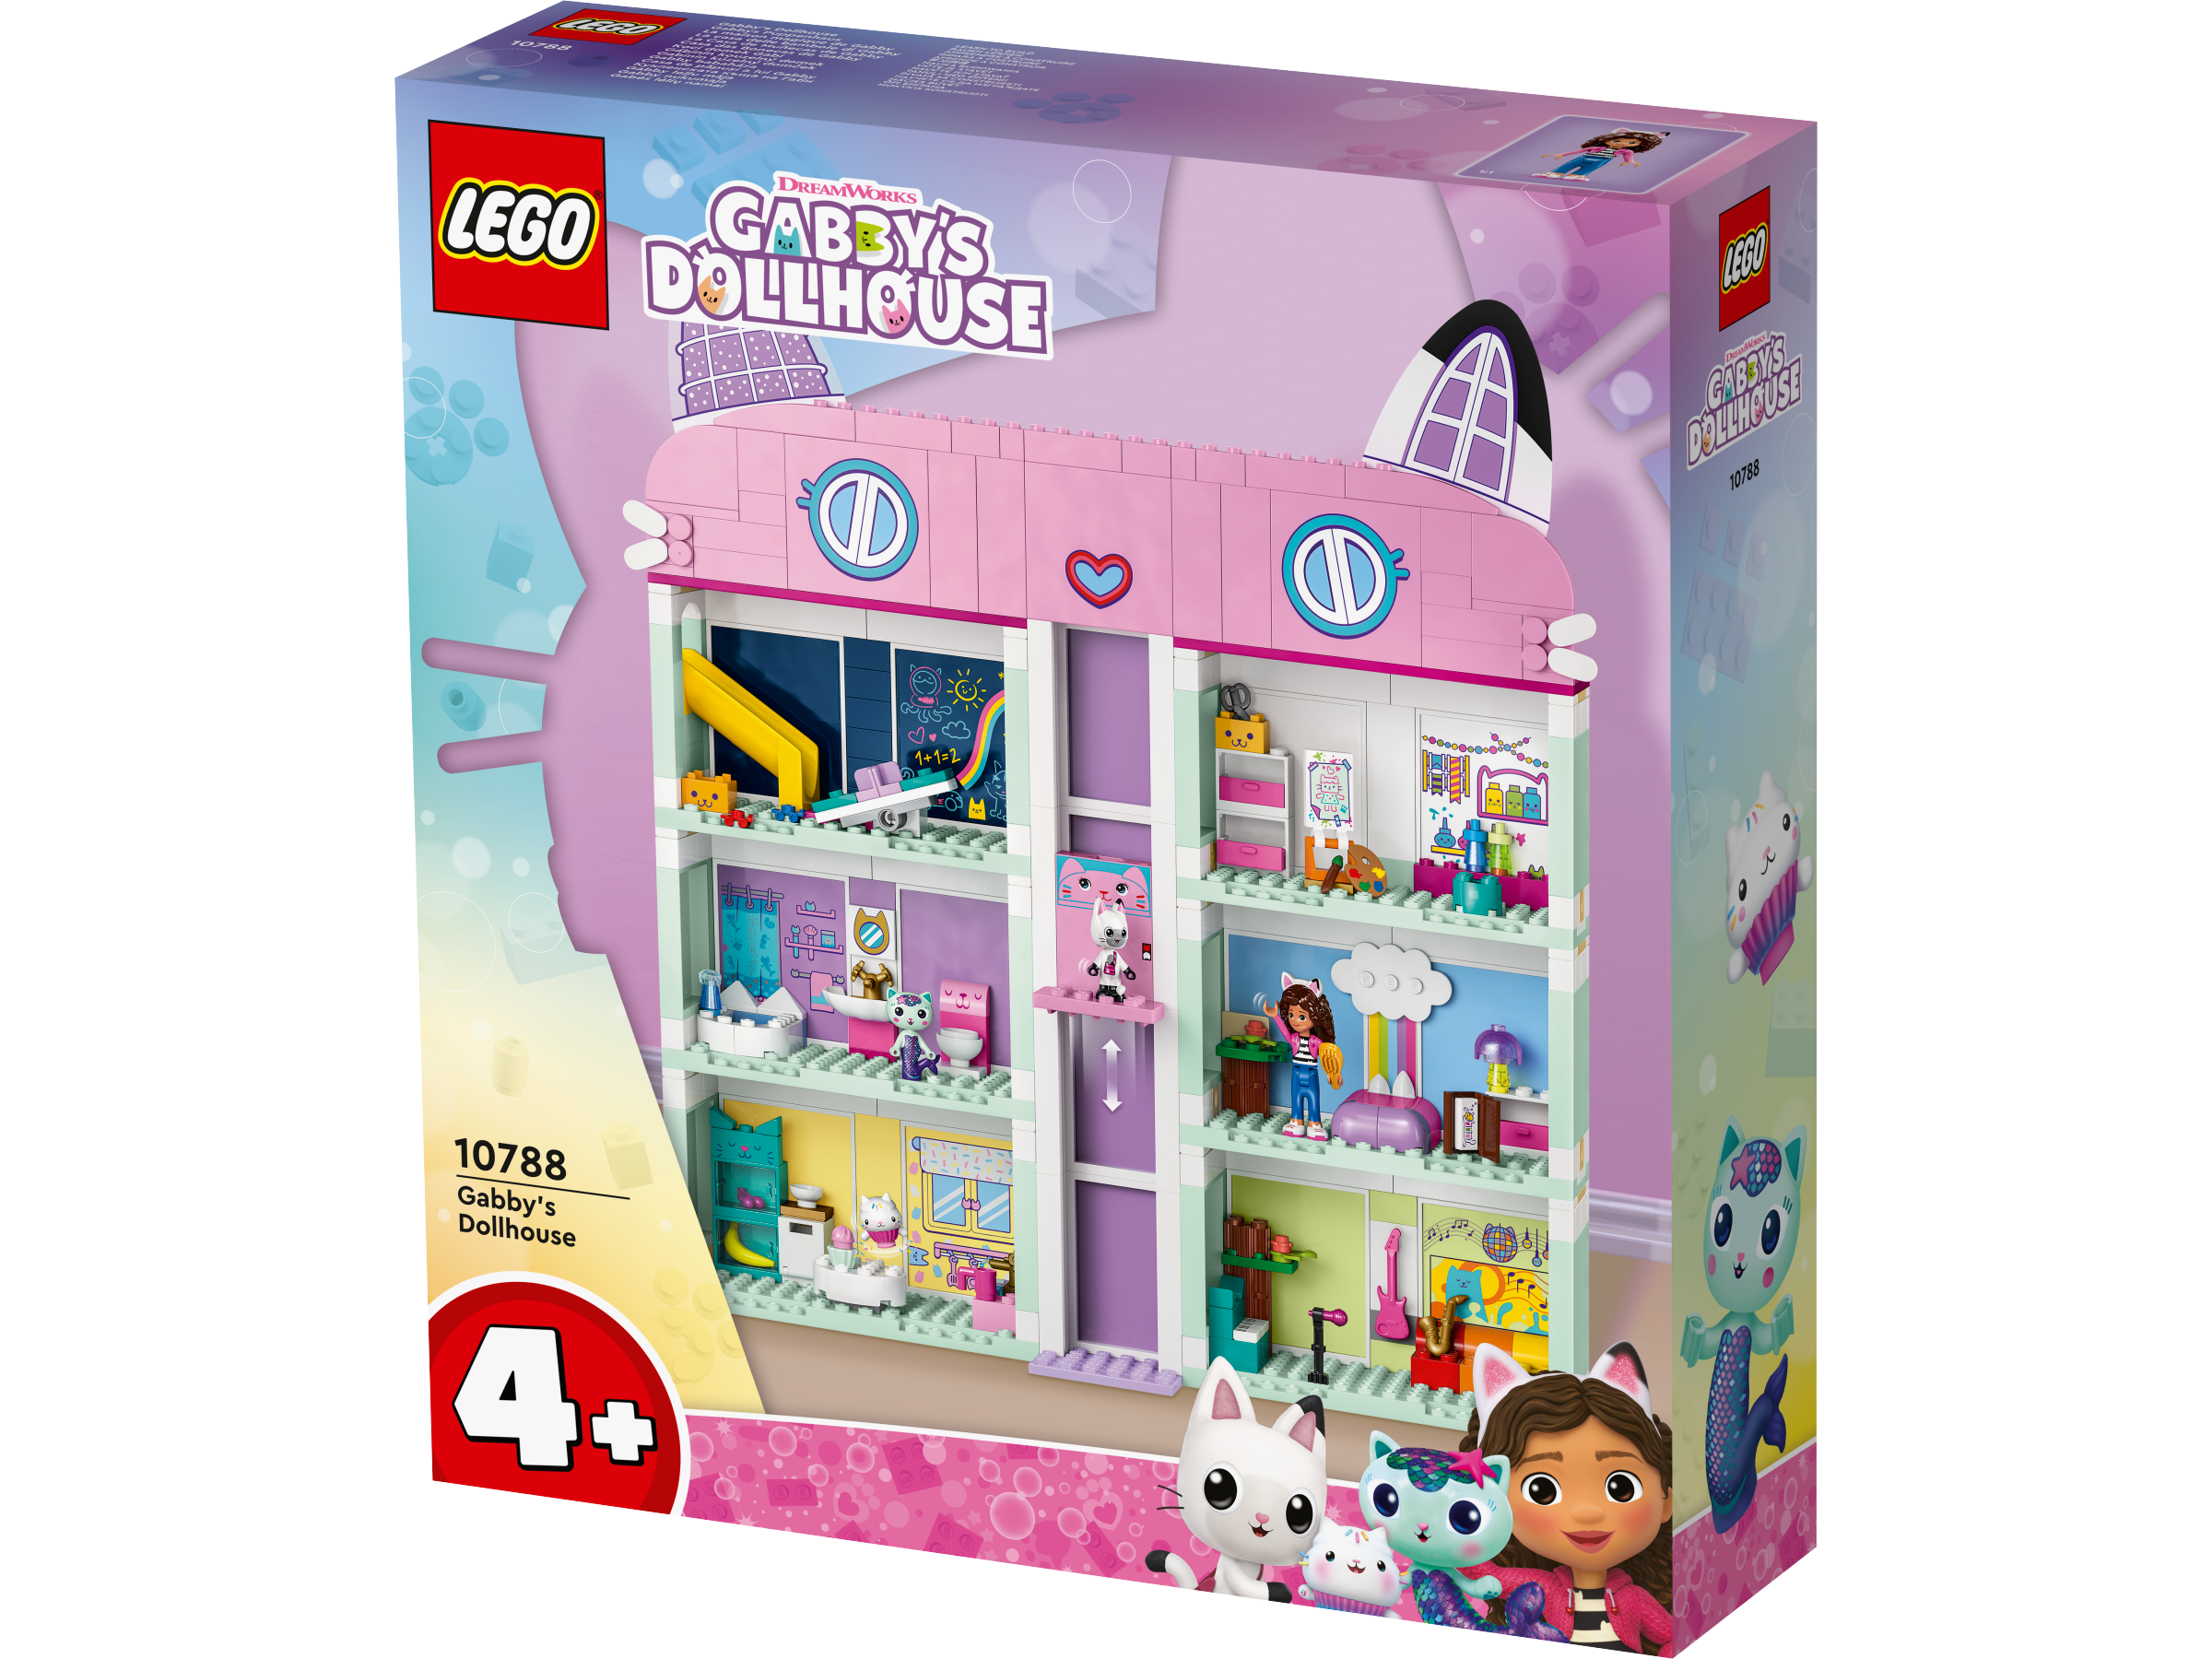 Lego 10788 Gabbys Dollhouse